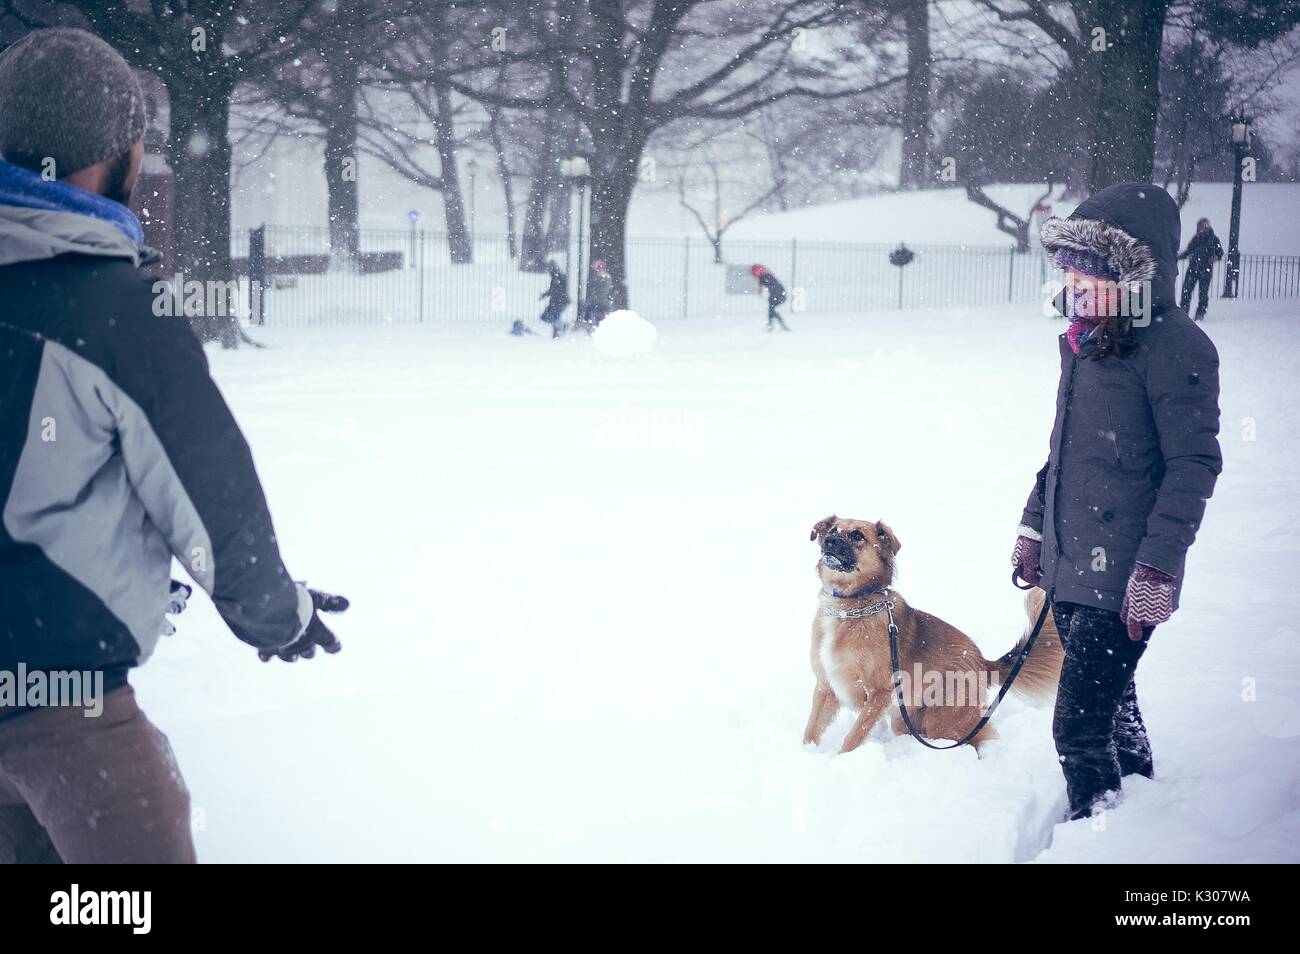 Ein Hund steht im Schnee wartet eine Schneeballschlacht, die ihm von seinem Besitzer geworfen zu fangen, während ein Snow Day an der Johns Hopkins University, Baltimore, Maryland, 2016. Stockfoto